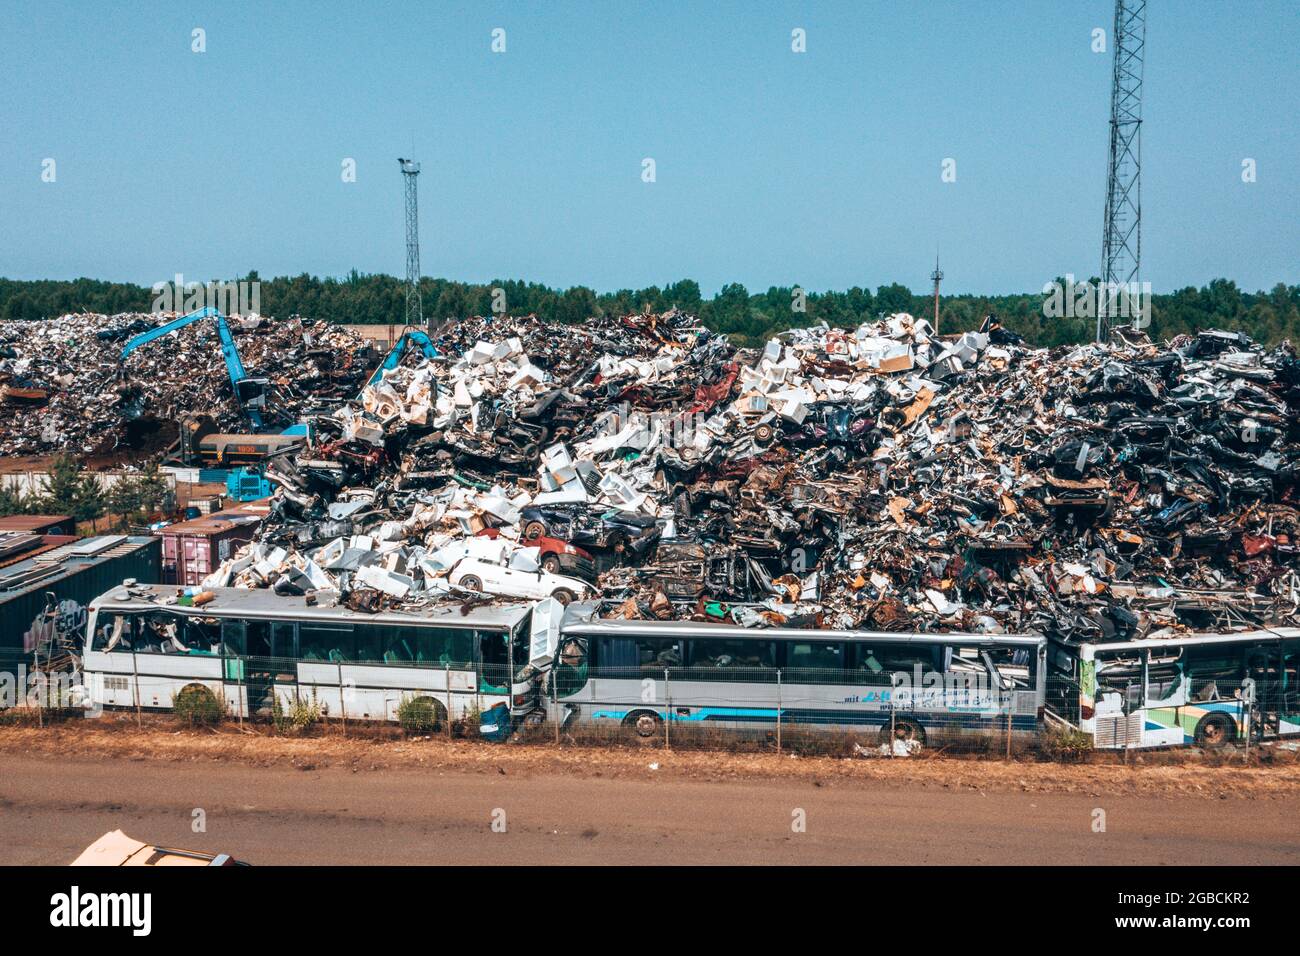 Vieilles voitures endommagées sur le chantier en attente de recyclage Banque D'Images